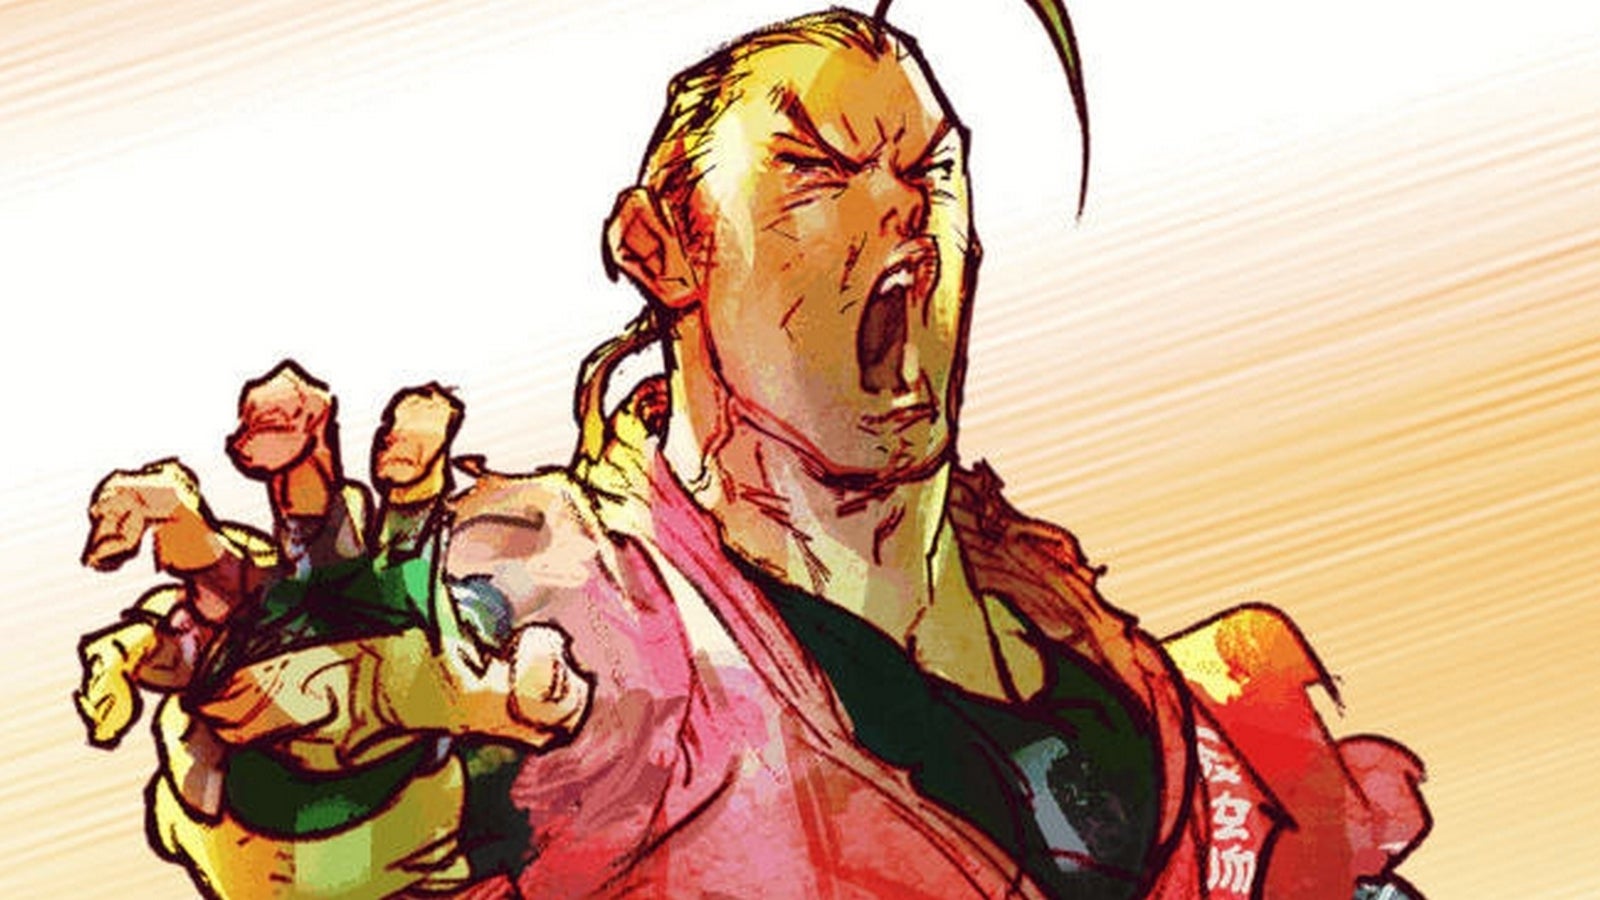 Bilder zu Dan, Rose, Oro und Akira als neue Charaktere für Street Fighter 5 angekündigt